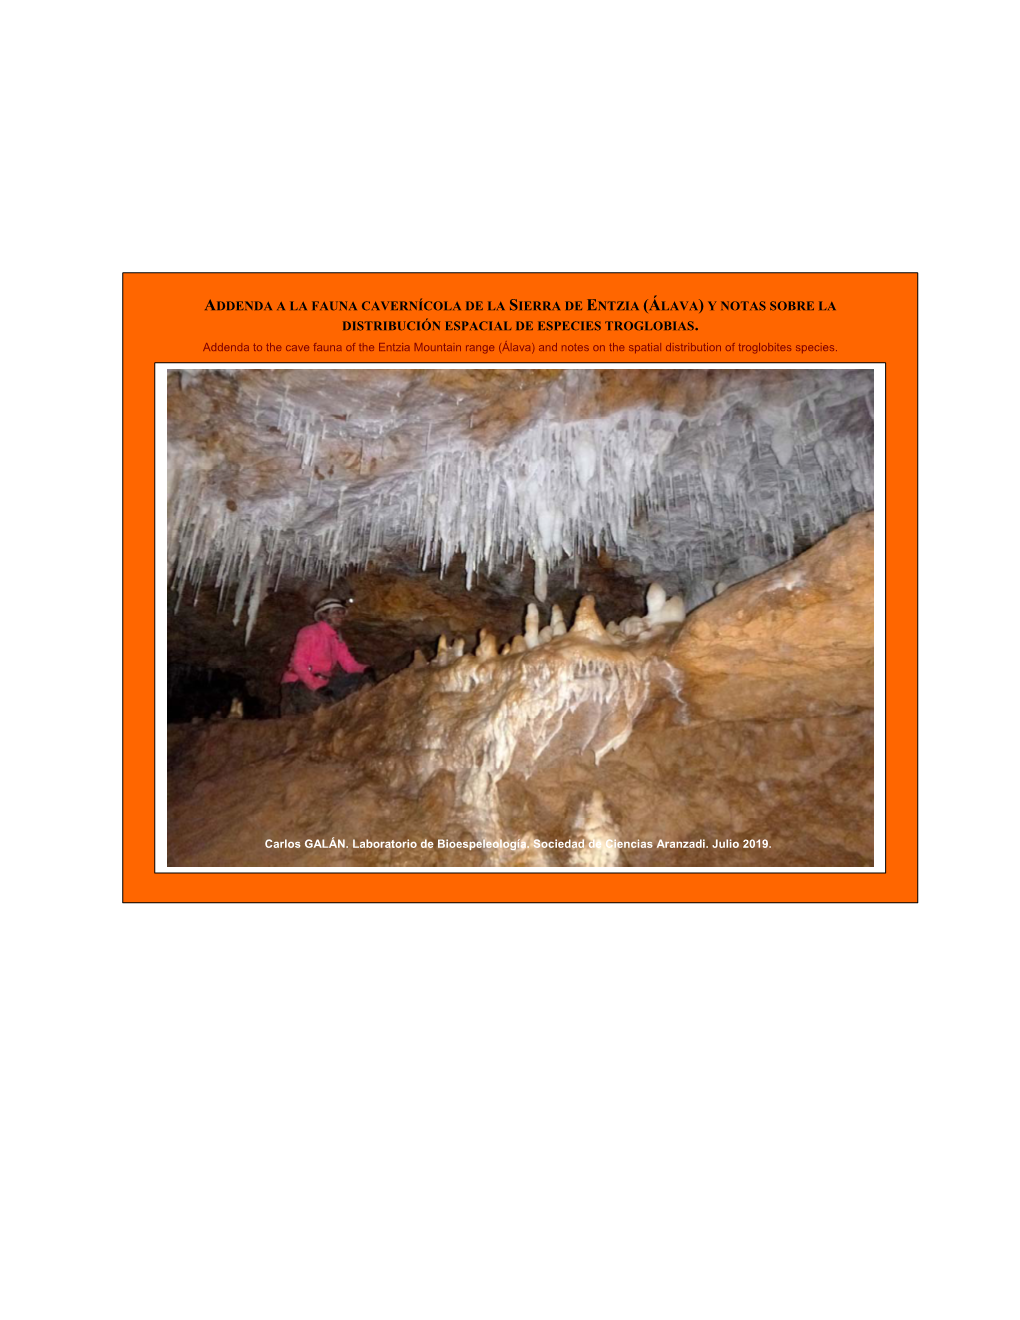 Addenda a La Fauna Cavernícola De La Sierra De Entzia (Álava) Y Notas Sobre La Distribución Espacial De Especies Troglobias